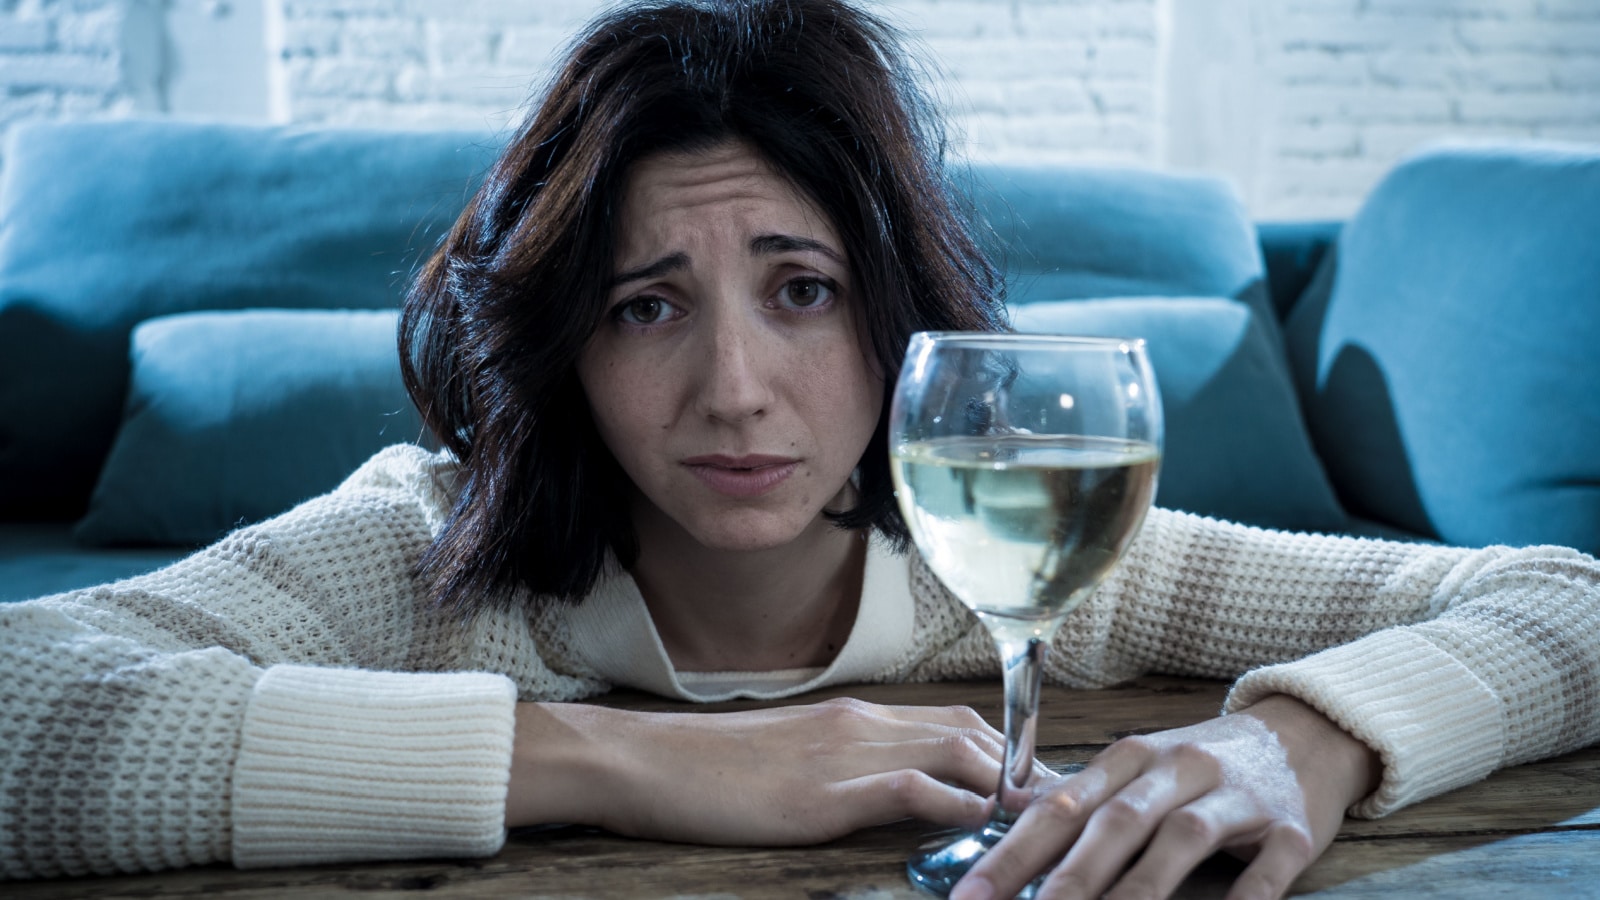 sad depressed wine alcoholic